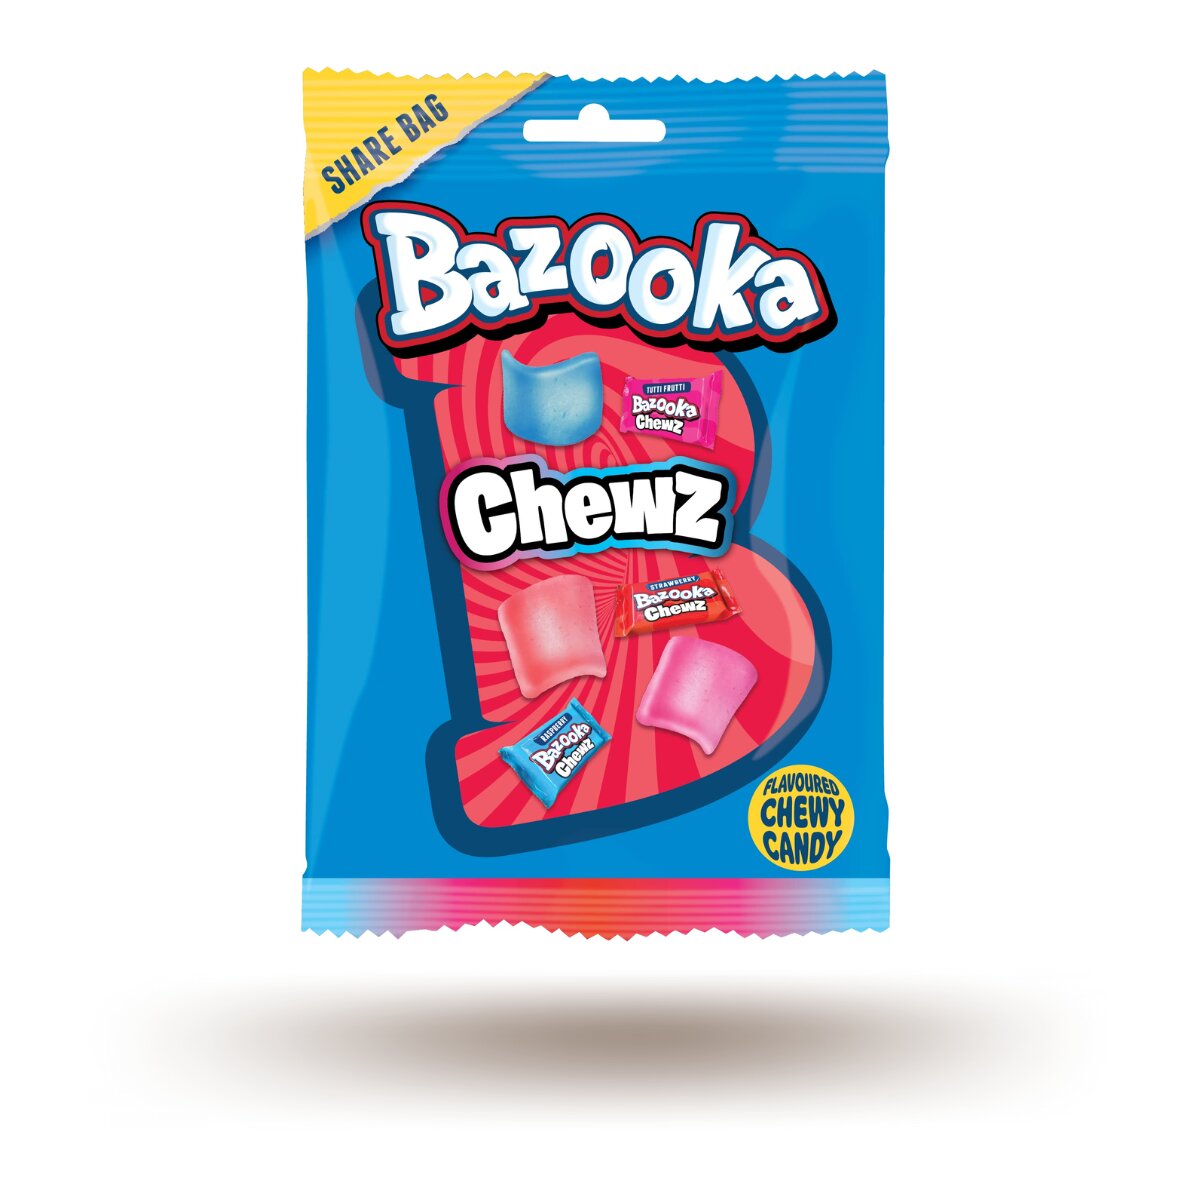 Bazooka Chewz Juicy drop Blasts (120g)